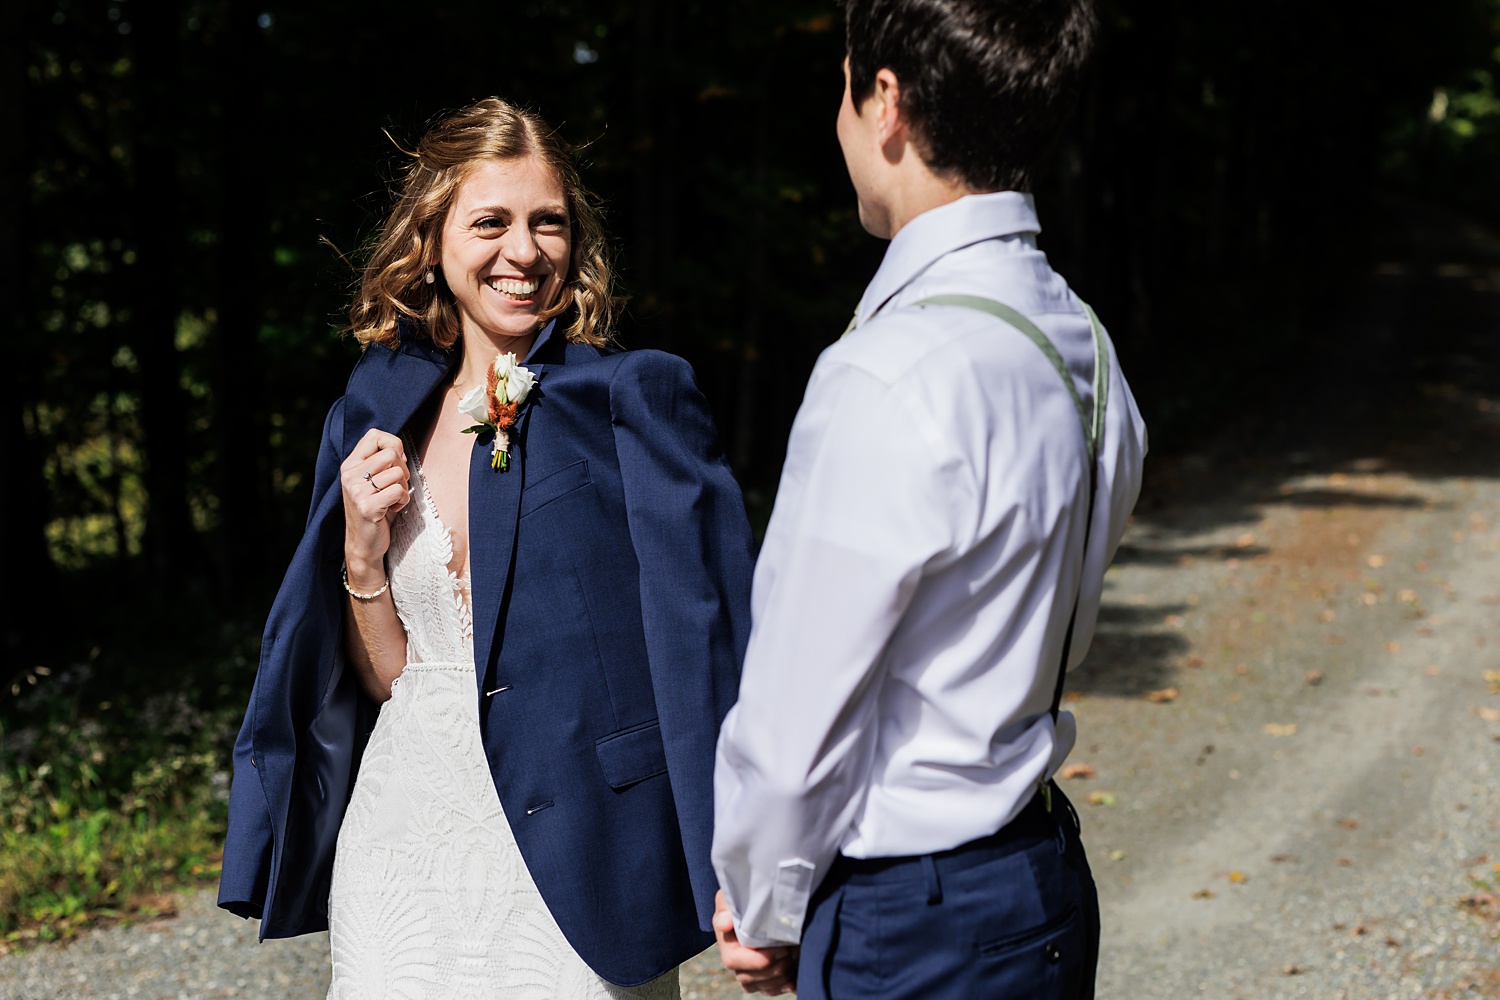 The bride smiles in her groom's suit coat